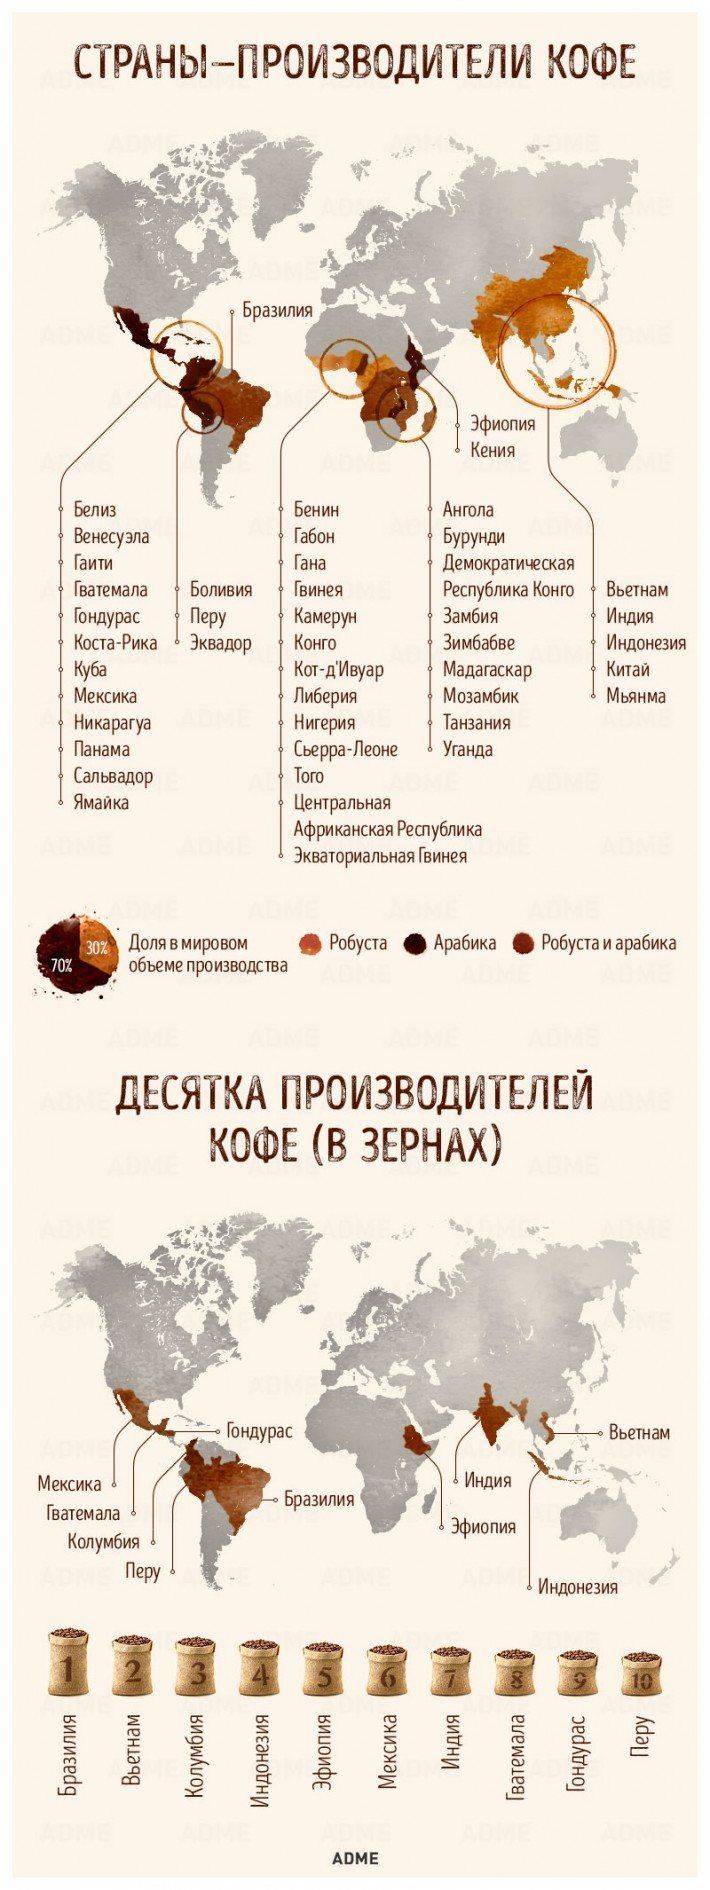 Крупные поставщики кофе мира и россии